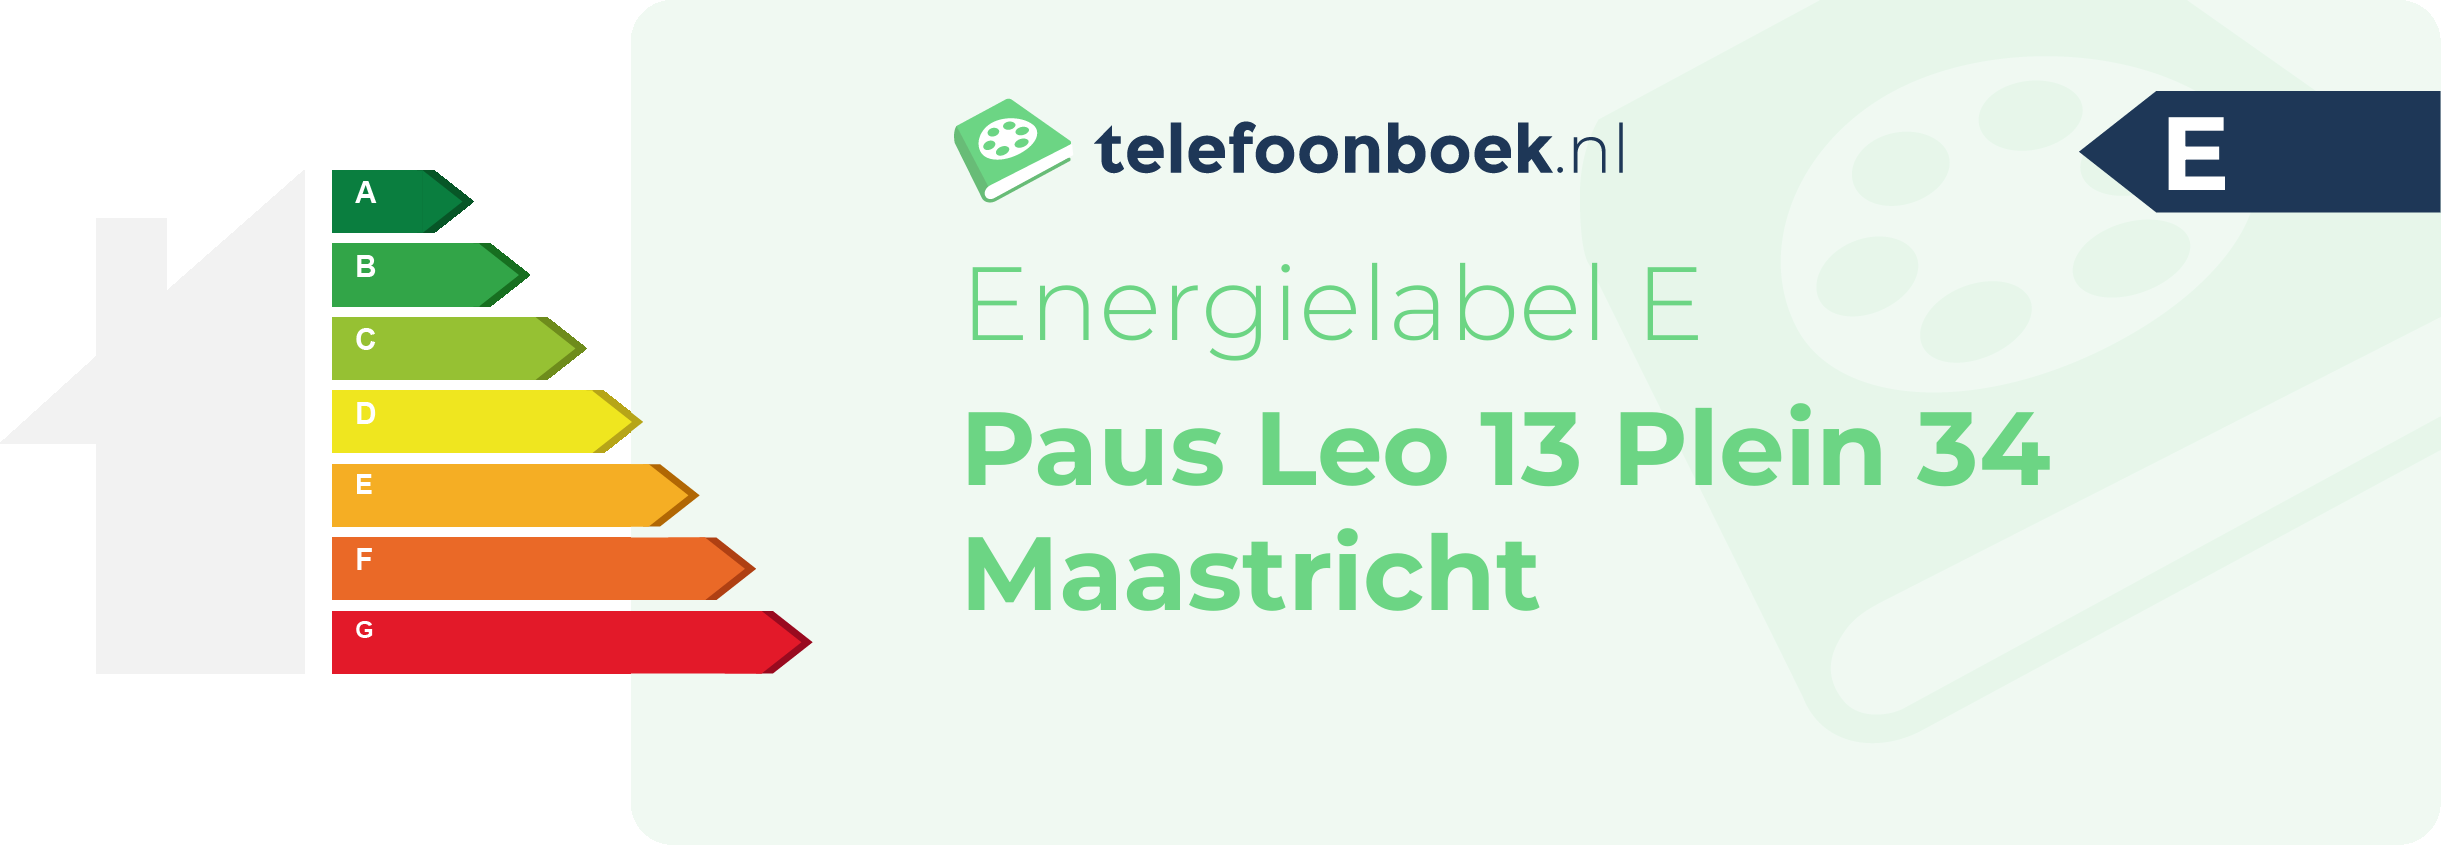 Energielabel Paus Leo 13 Plein 34 Maastricht